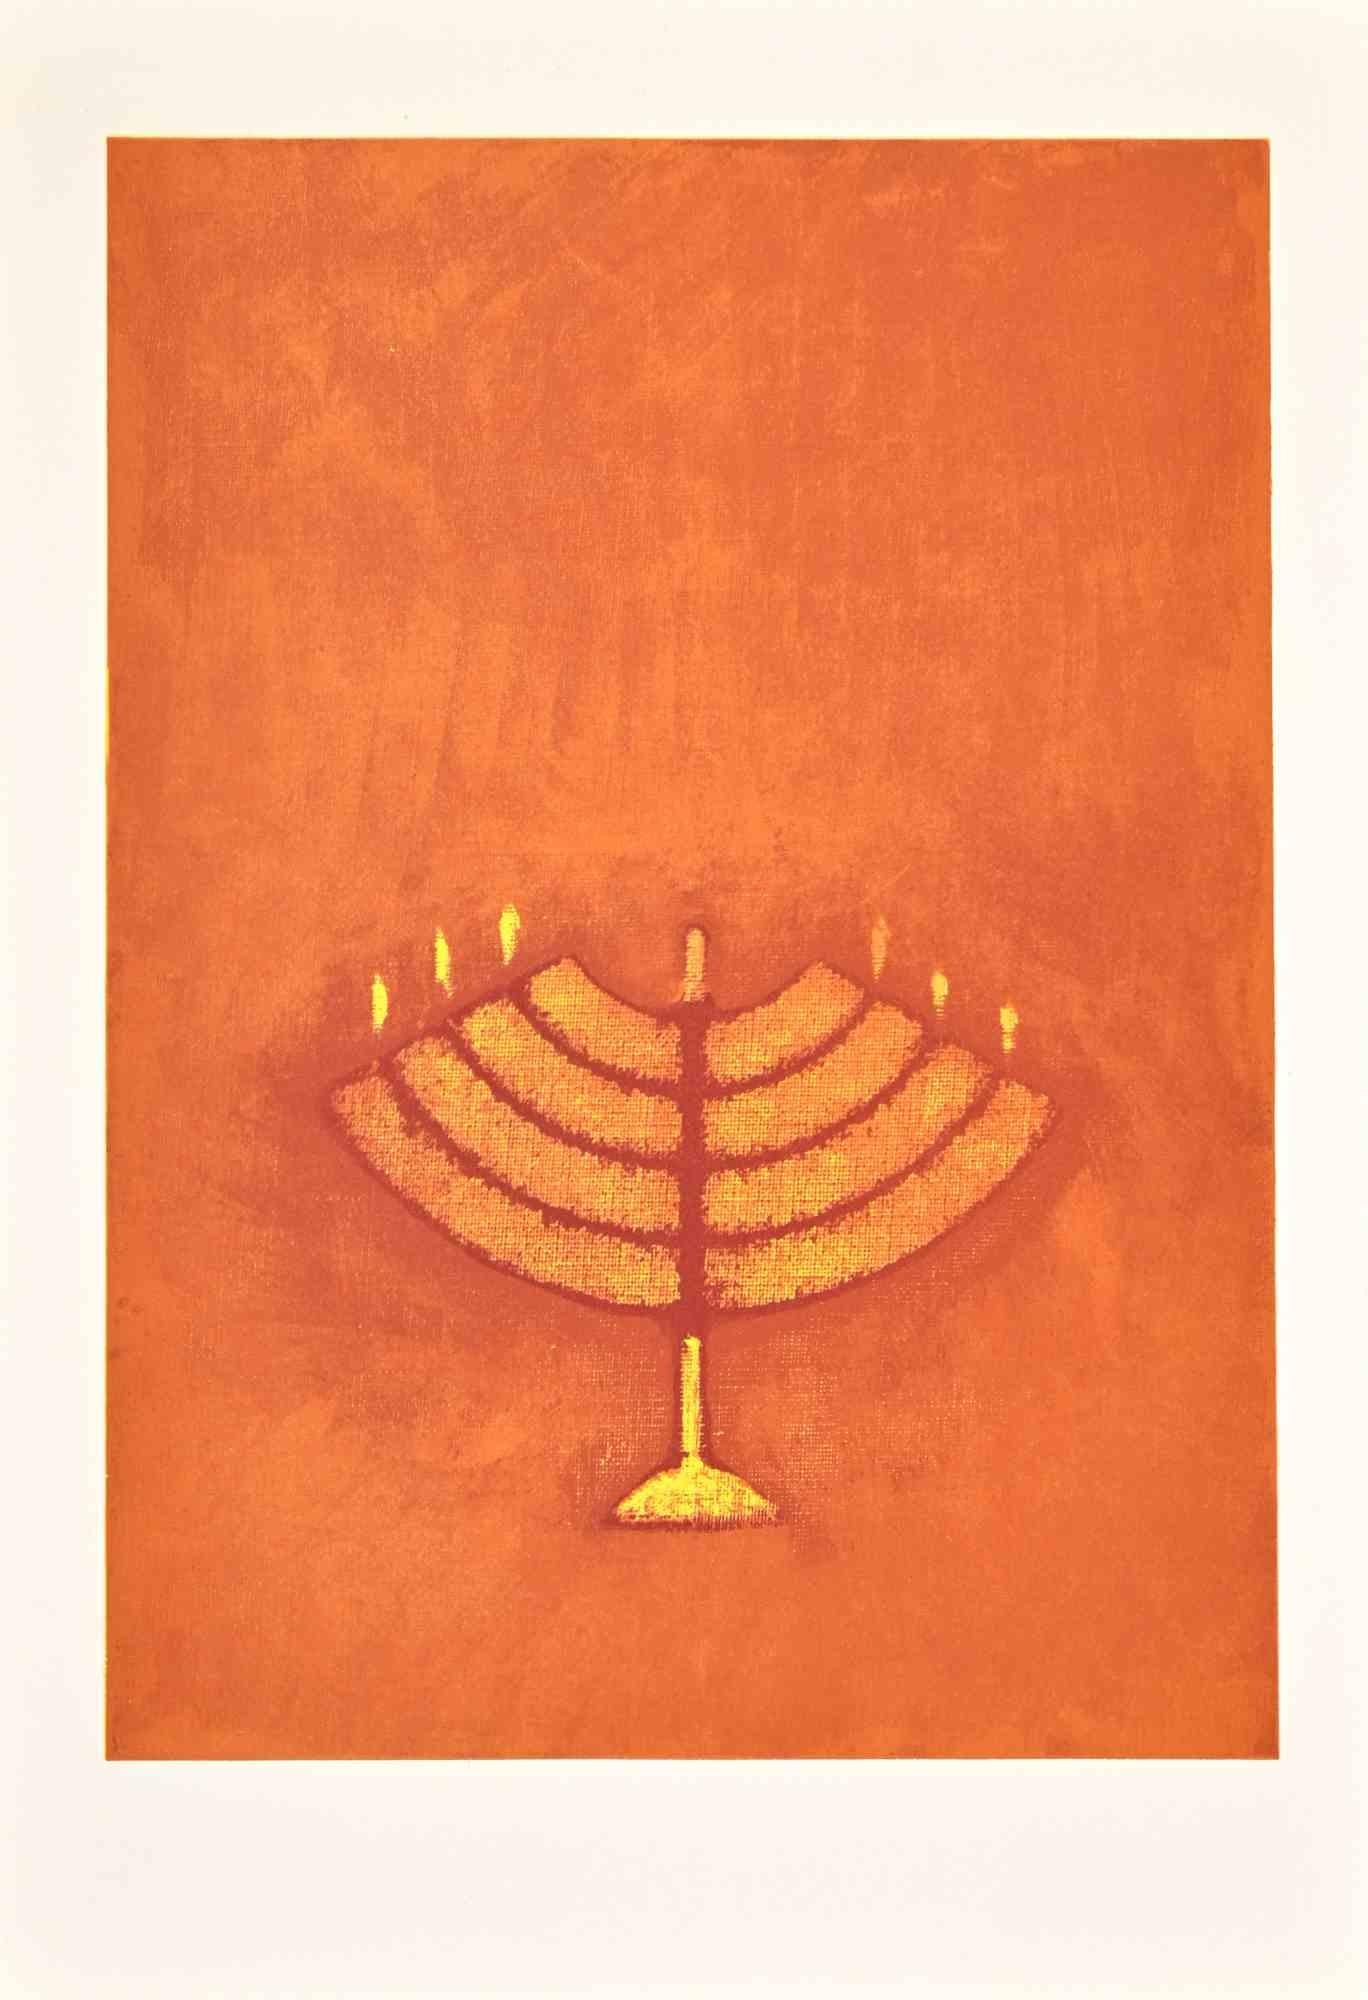 Menorah est une lithographie sur papier Arches réalisée par Max Ernst en 1972.

Appartient à la suite "Judith". Edition limitée à 500 exemplaires.

Non signé et non numéroté, tel que publié.

Les conditions de Godd.

La Suite a été réalisée pour